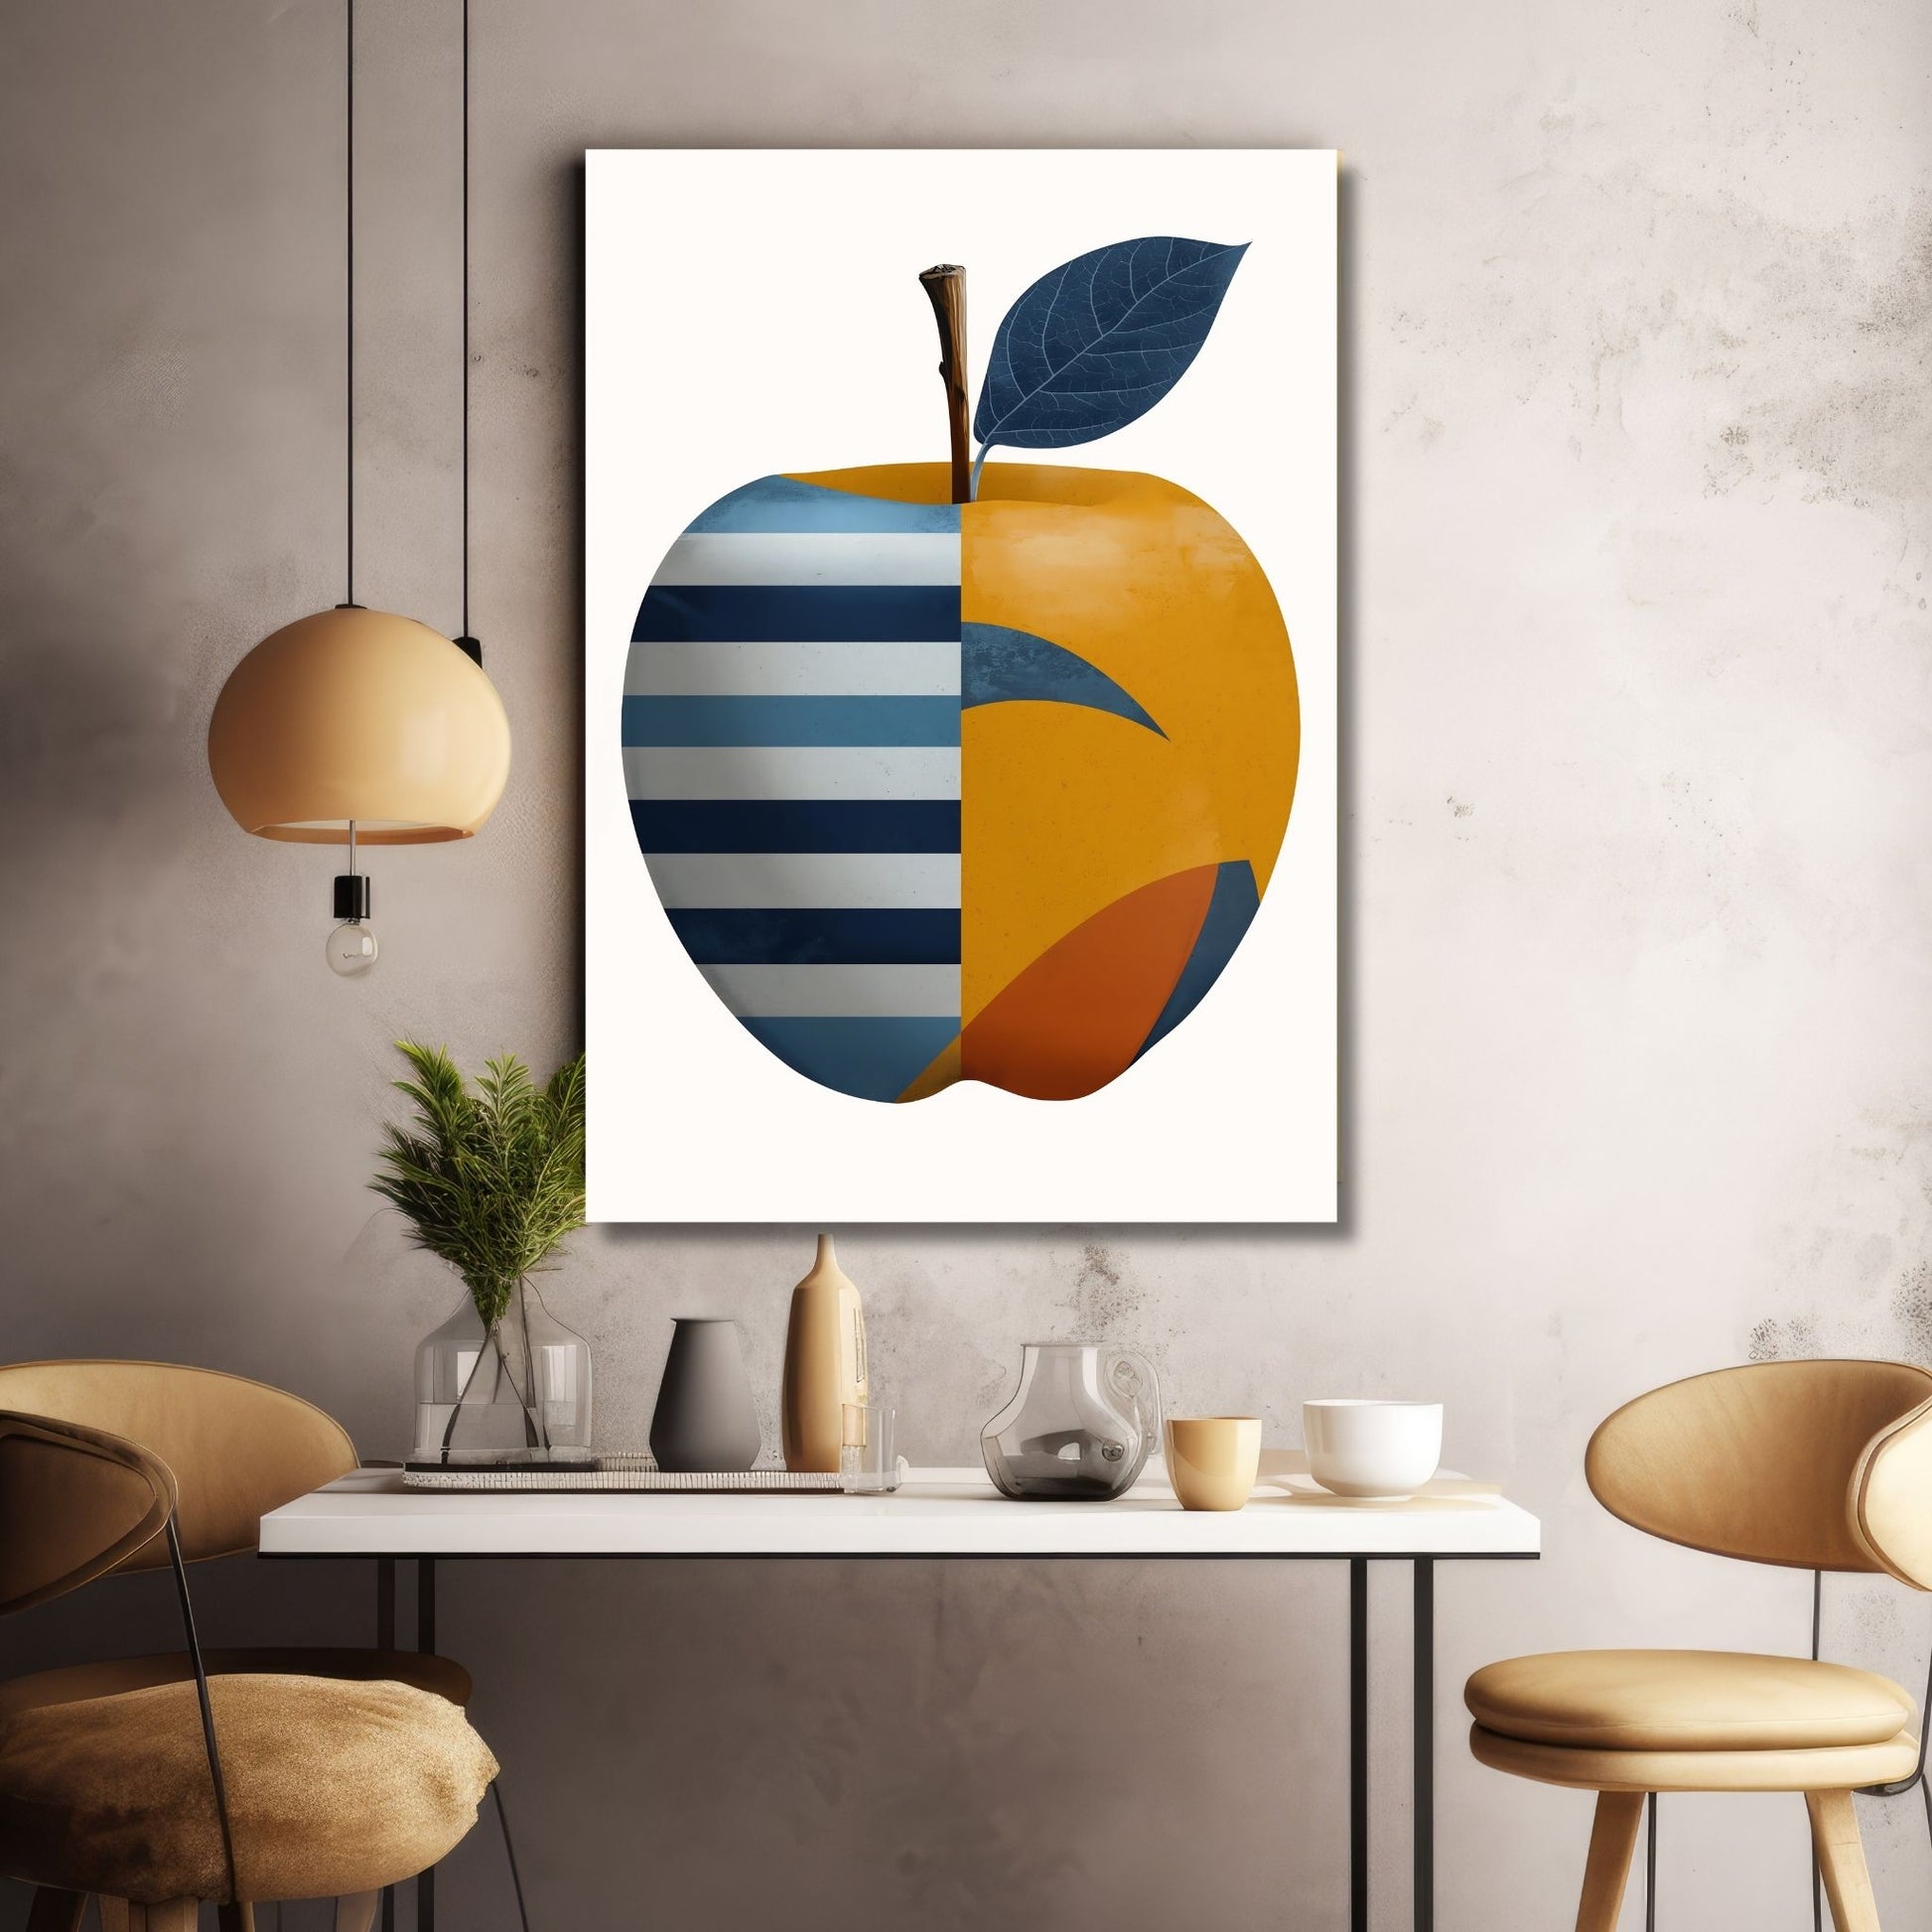 Illustrasjonen av et eple, dekorert med abstrakte former i livlige røde, gule og blåfarger. Bakgrunn i beige. Fås som plakat og lerret. Illustrasjonen viser motiv på lerret.